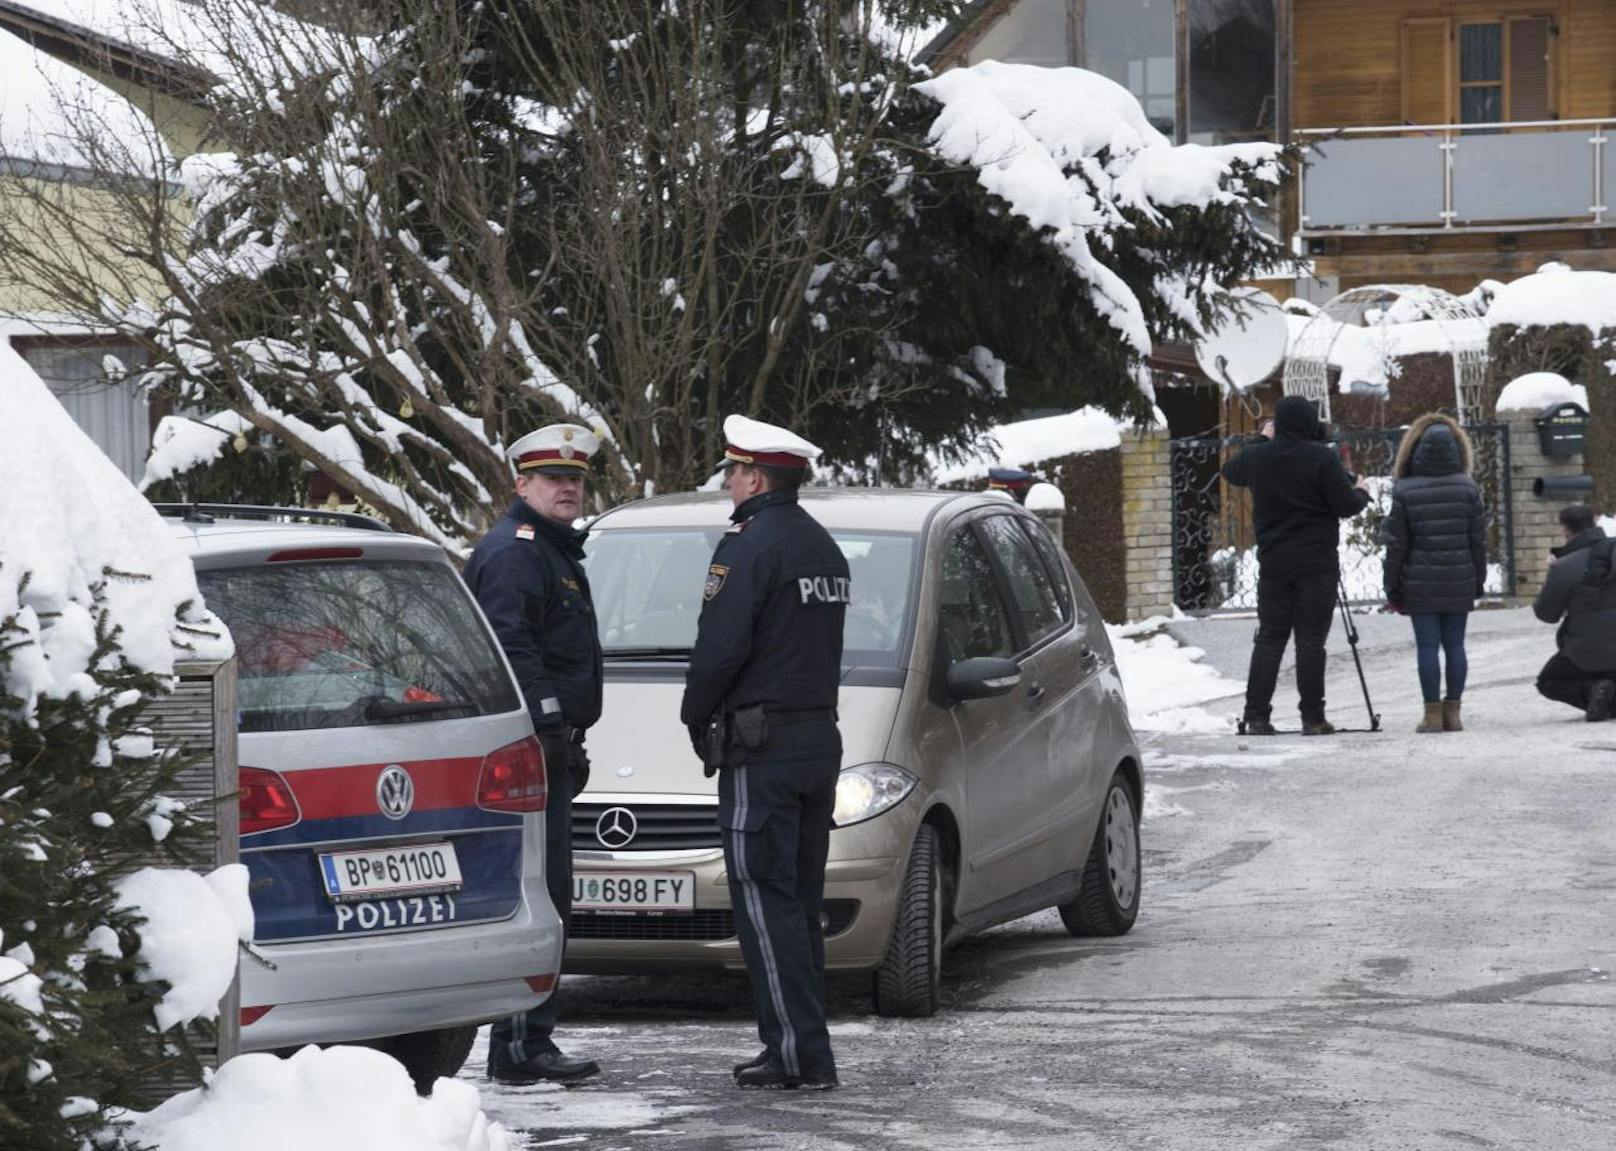 Bei einer Familientragödie in Mantscha (Gemeinde Seiersberg) ist am Montag eine 78-jährige Frau tot in ihrem Schlafzimmer gefunden worden. Der 22-jährige Enkelsohn sowie ihr Gatte wurden vorläufig festgenommen.